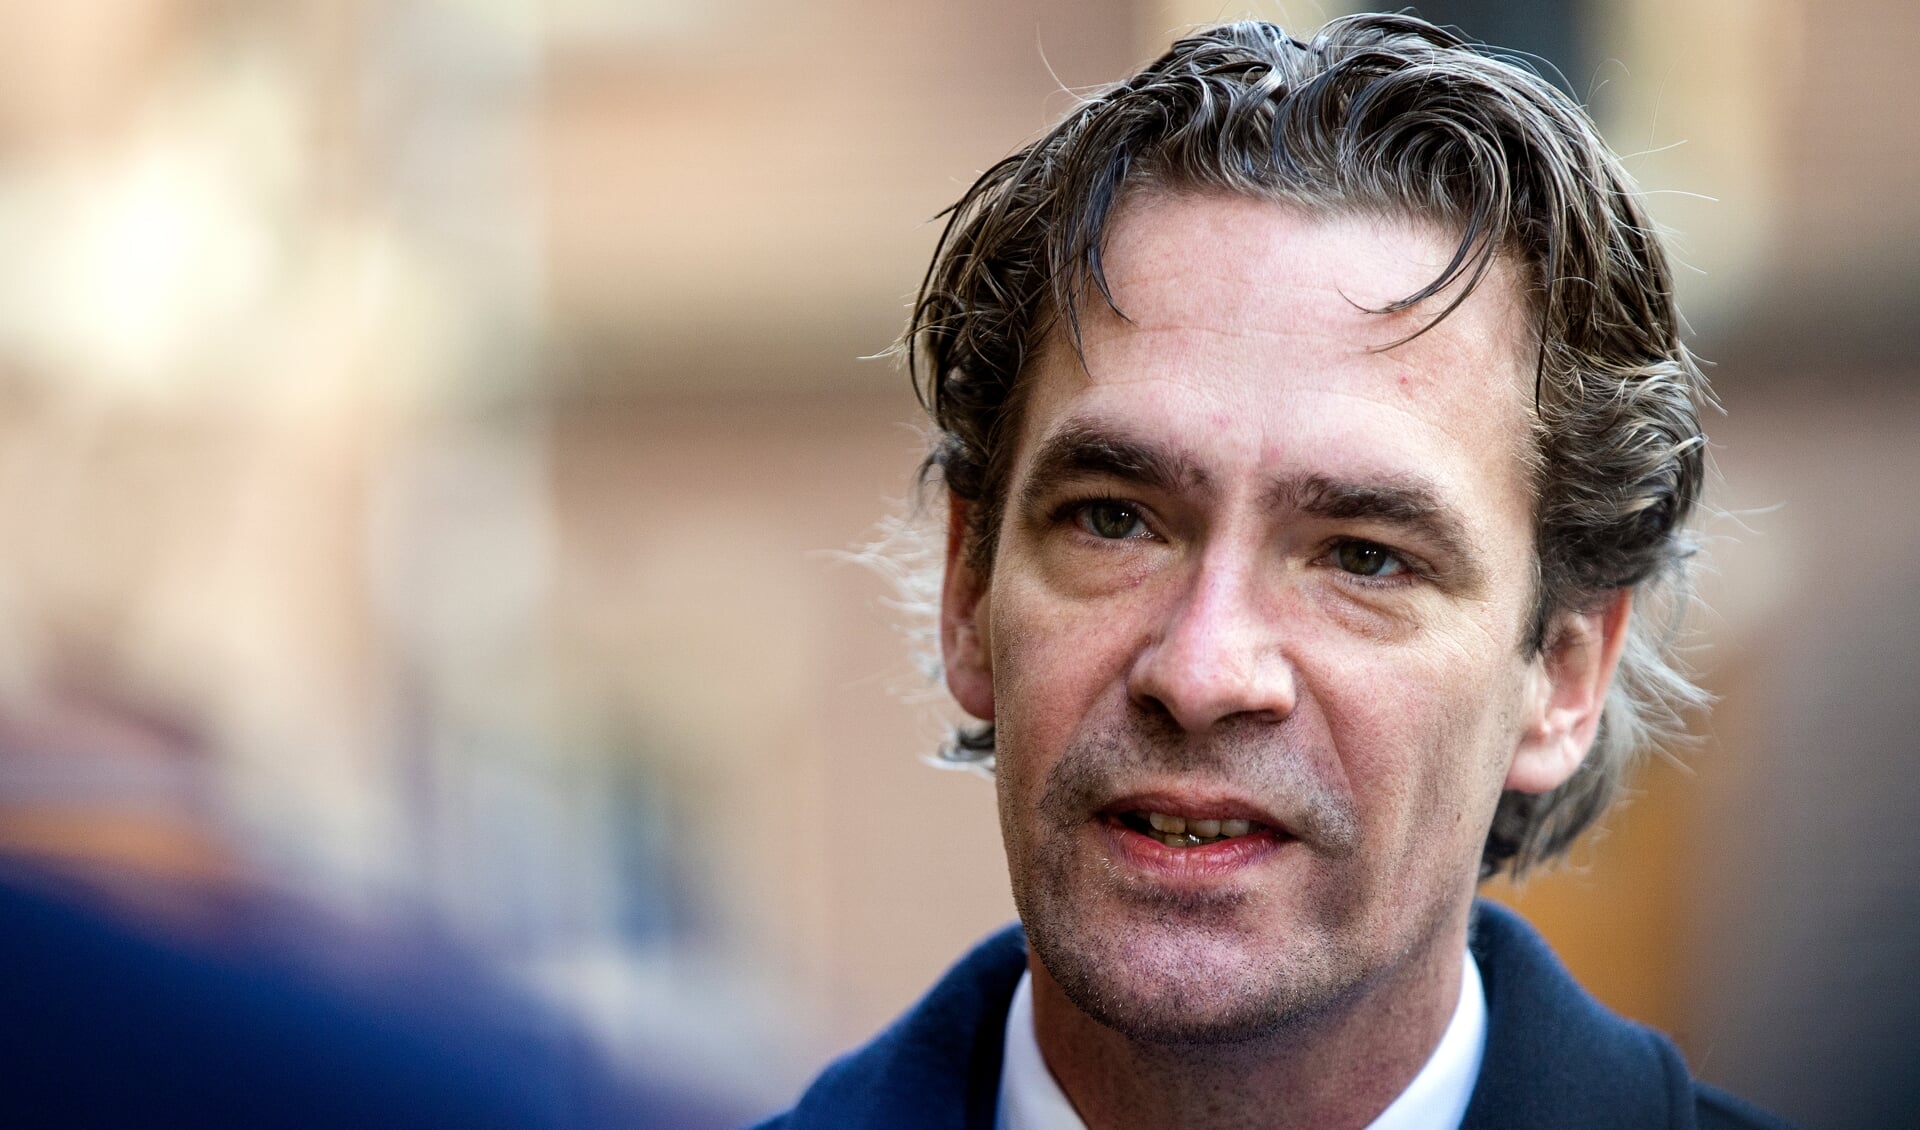 De 'Scherpenzeelse Amsterdammer' Bas van 't Wout, volgt Wiebes op als minister.